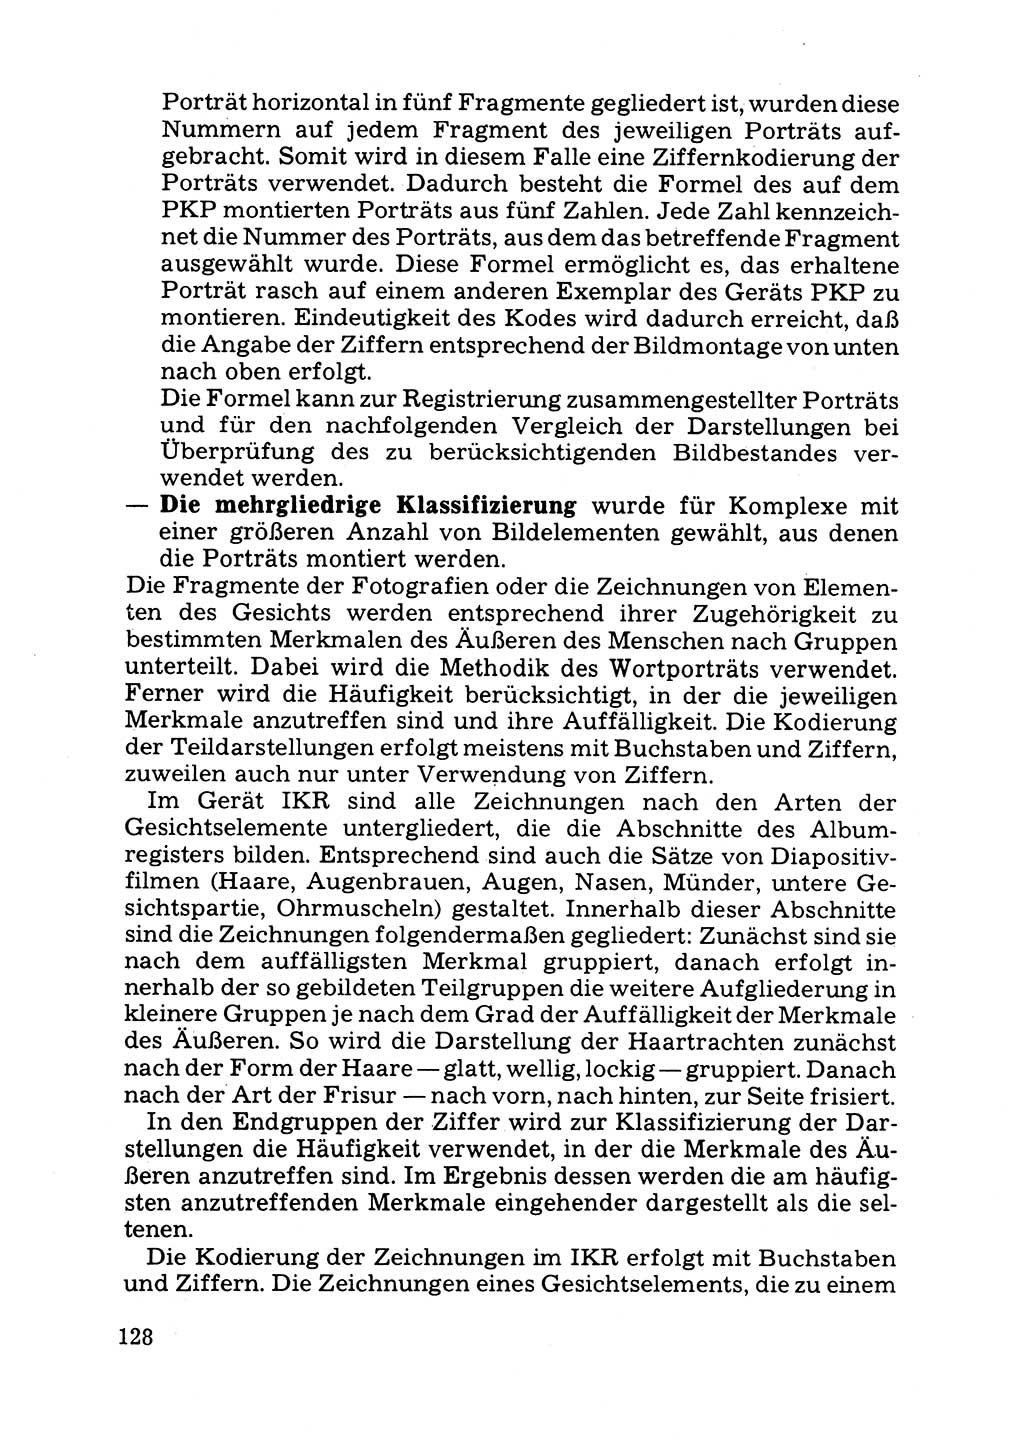 Das subjektive Porträt [Deutsche Demokratische Republik (DDR)] 1981, Seite 128 (Subj. Port. DDR 1981, S. 128)